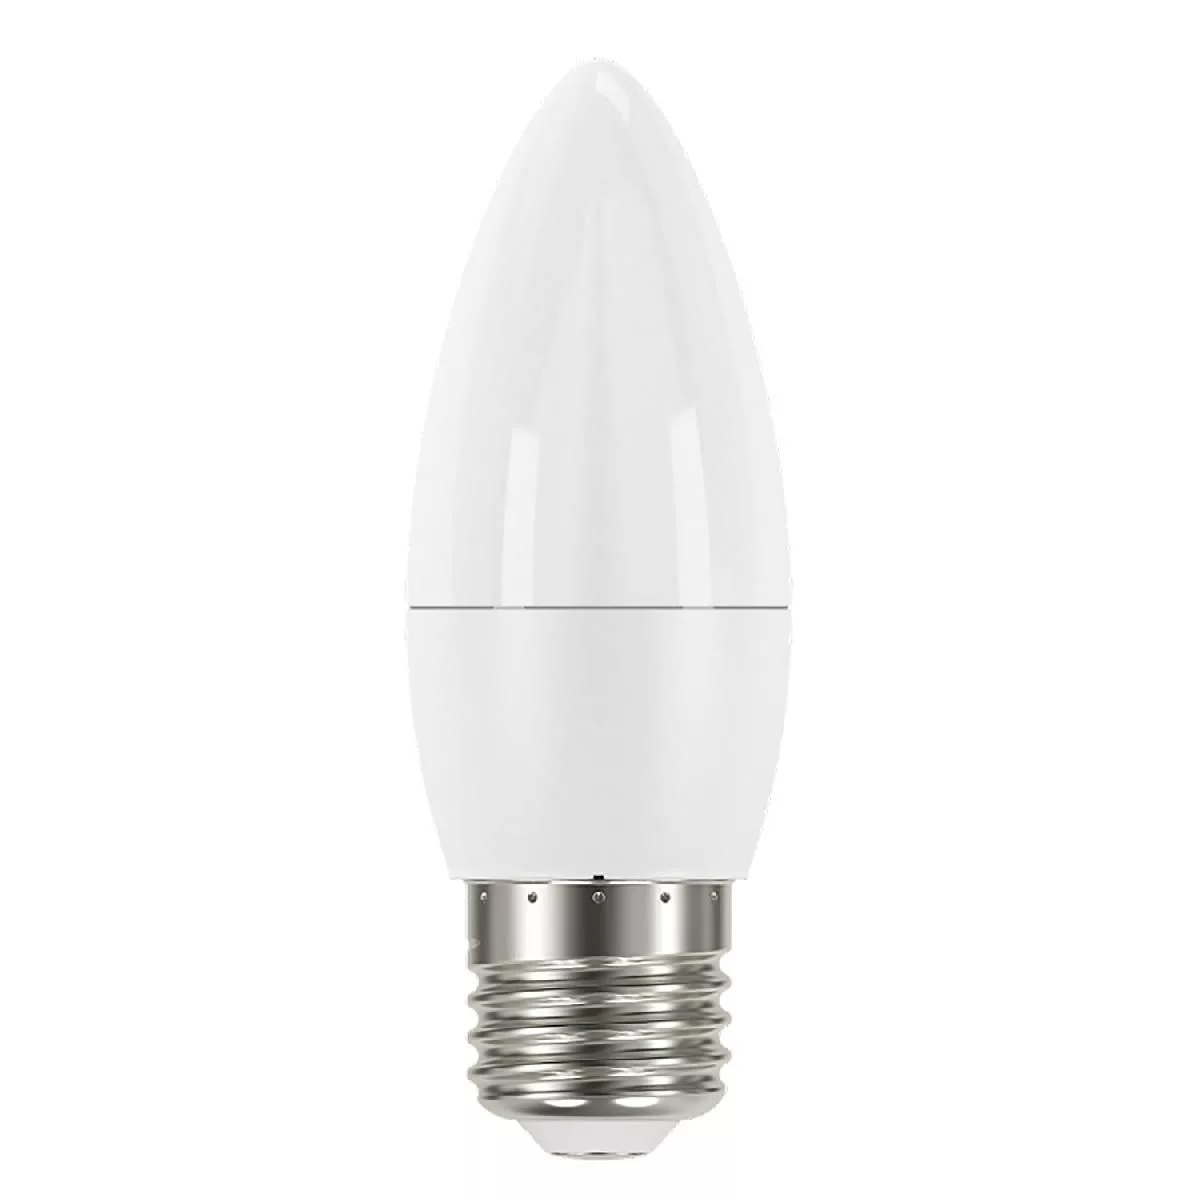 Упаковка 10 штук Лампа Gauss Elementary Свеча 10W 750lm 4100K E27 LED 1/10/100